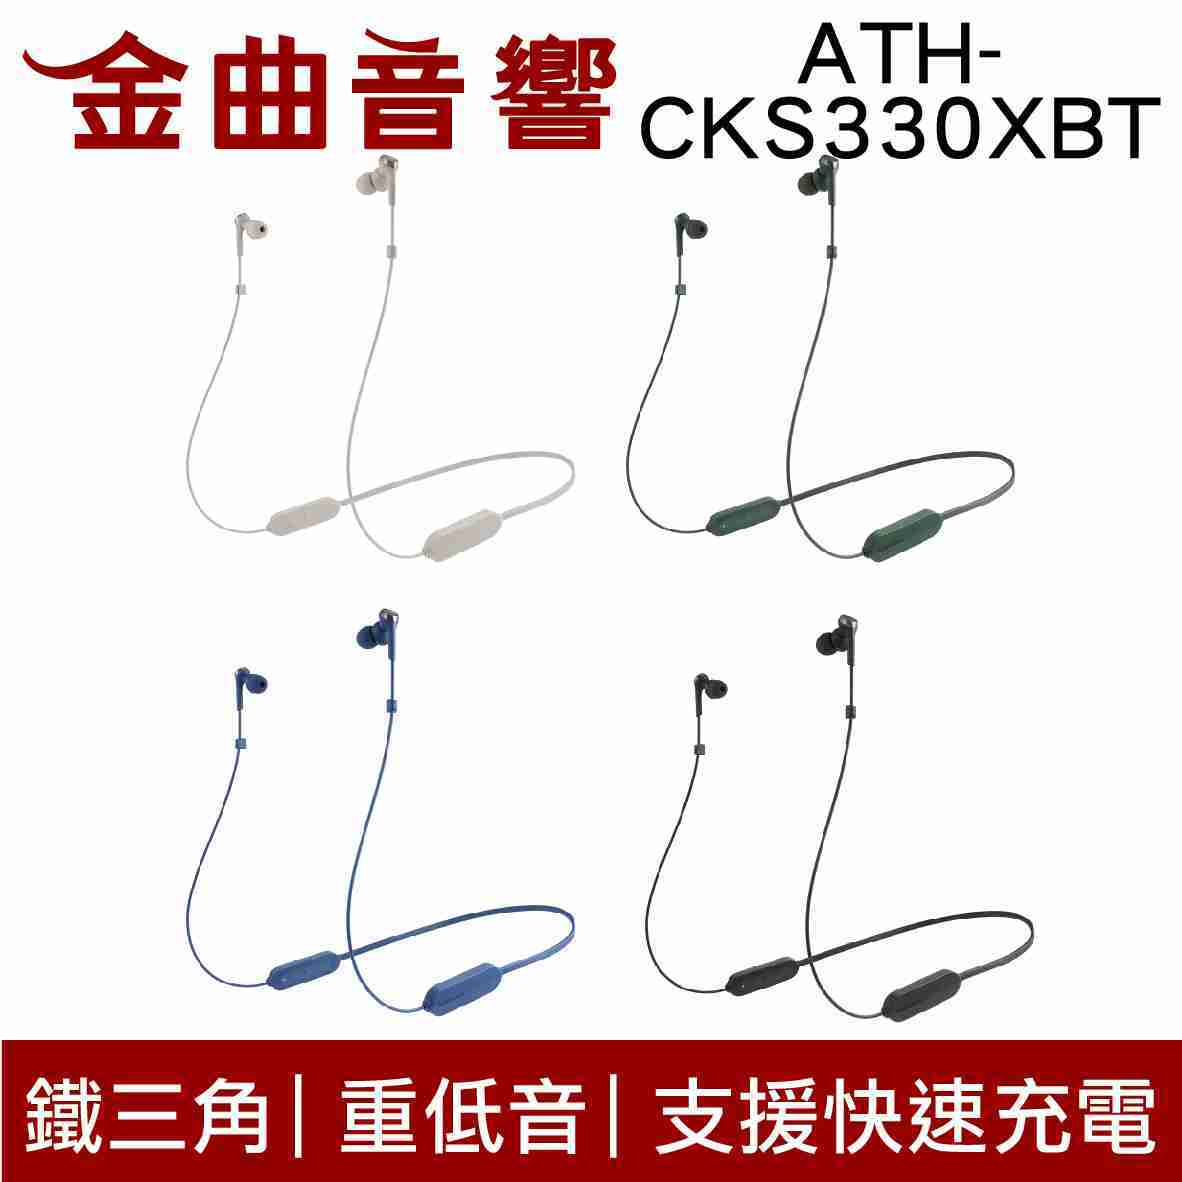 鐵三角 ATH-CKS330XBT 藍 低延遲 無線 藍芽 耳道式耳機 | 金曲音響